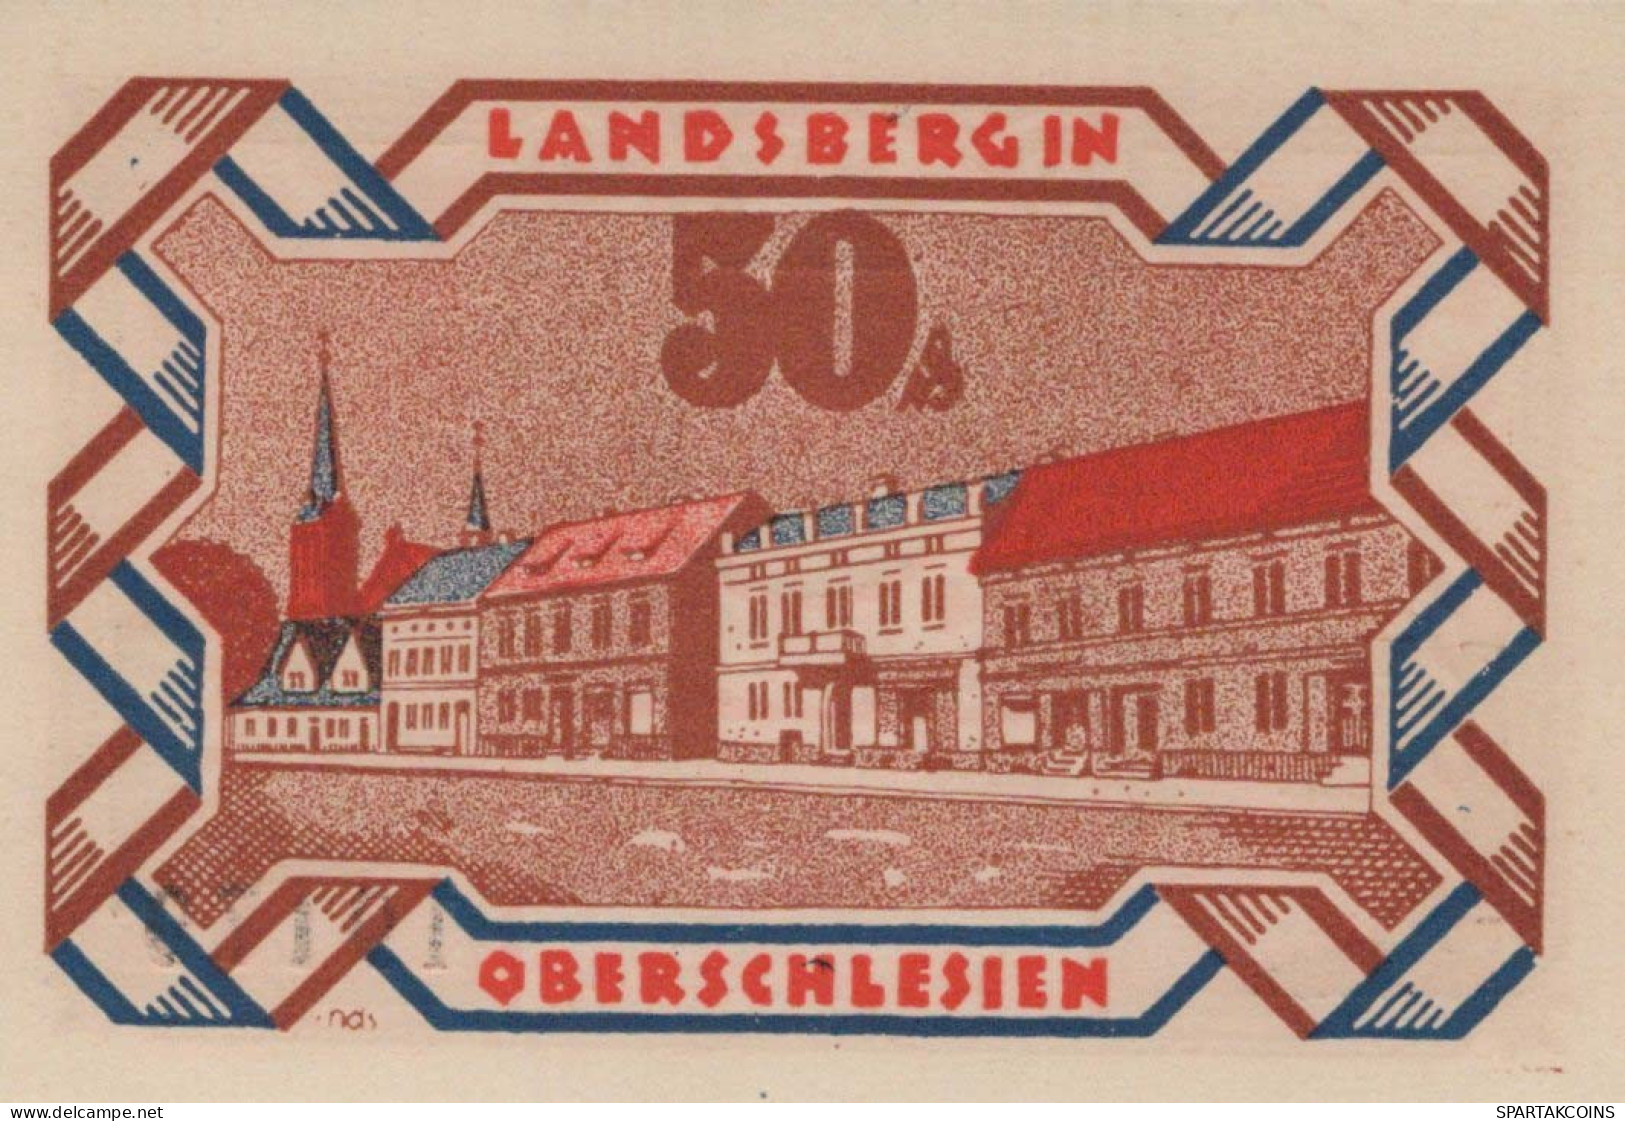 50 PFENNIG 1922 Stadt LANDSBERG OBERSCHLESIEN UNC DEUTSCHLAND #PB927 - Lokale Ausgaben